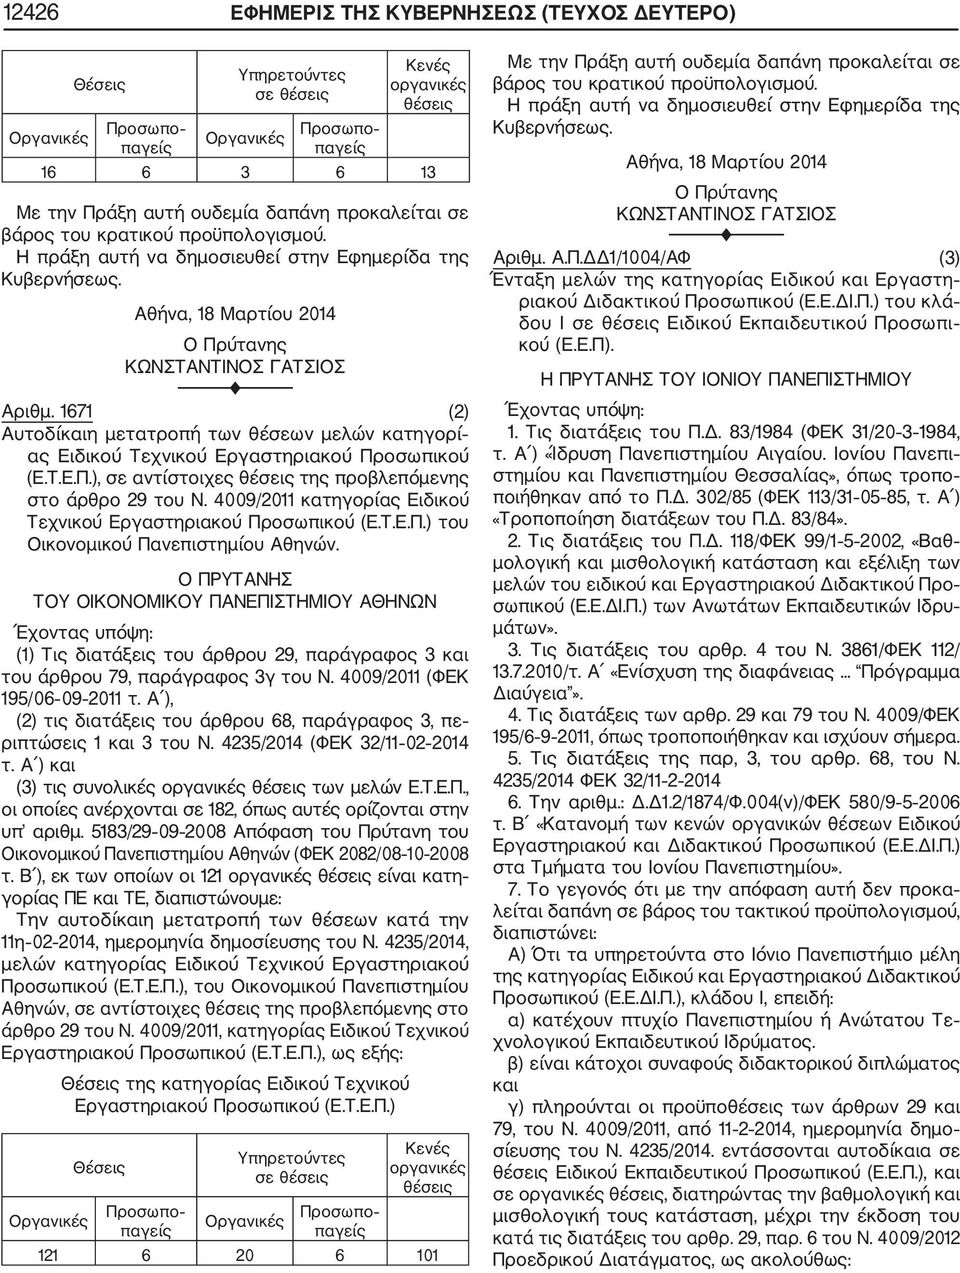 1671 (2) Αυτοδίκαιη μετατροπή των θέσεων μελών κατηγορί ας Ειδικού Τεχνικού Εργαστηριακού Προσωπικού (Ε.Τ.Ε.Π.), σε αντίστοιχες θέσεις της προβλεπόμενης στο άρθρο 29 του Ν.